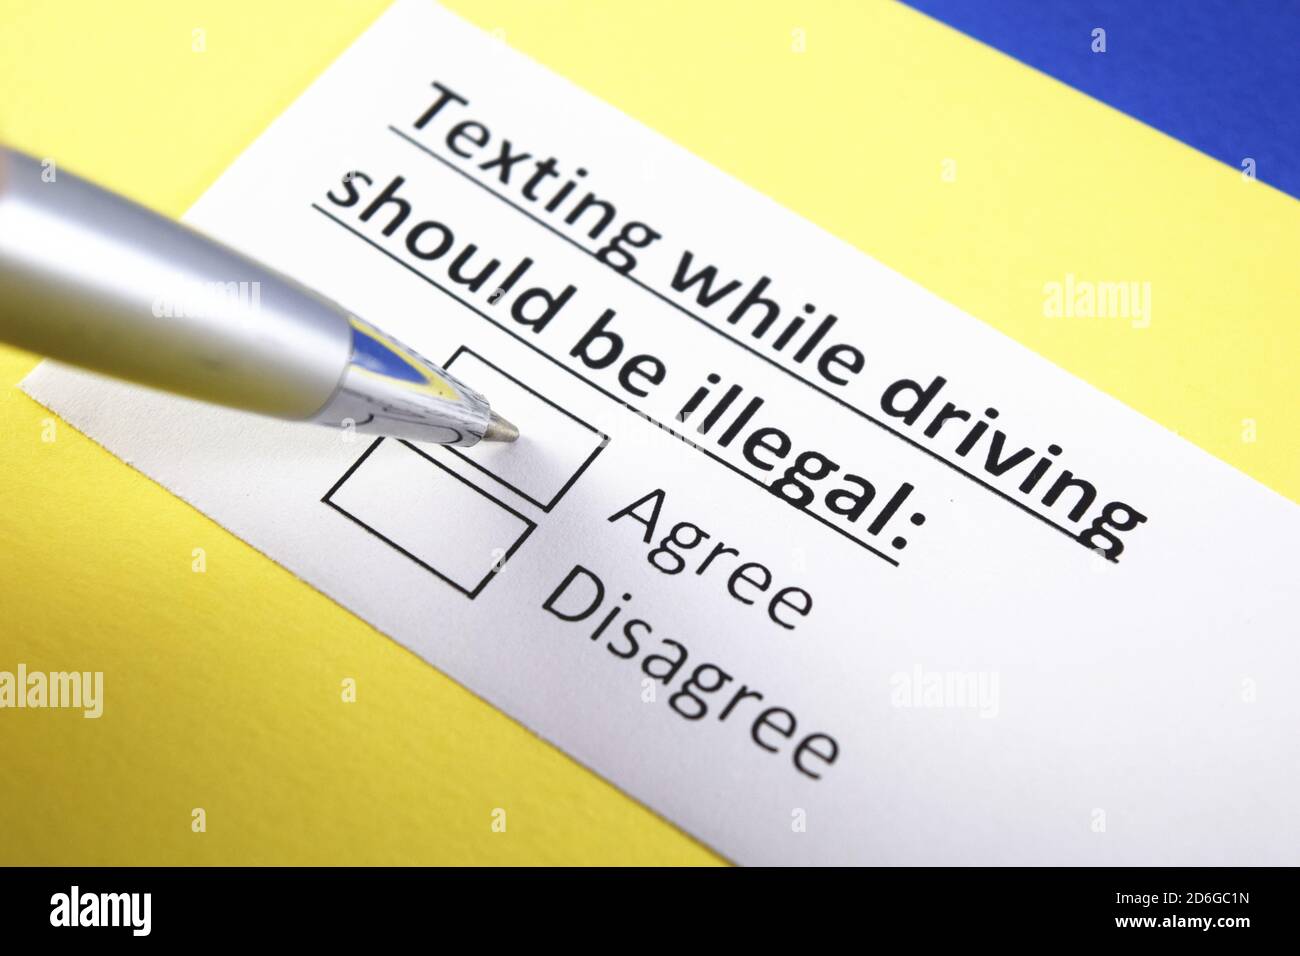 SMS während der Fahrt sollte illegal sein: Stimmen Sie zu oder stimmen Sie nicht zu? Stockfoto